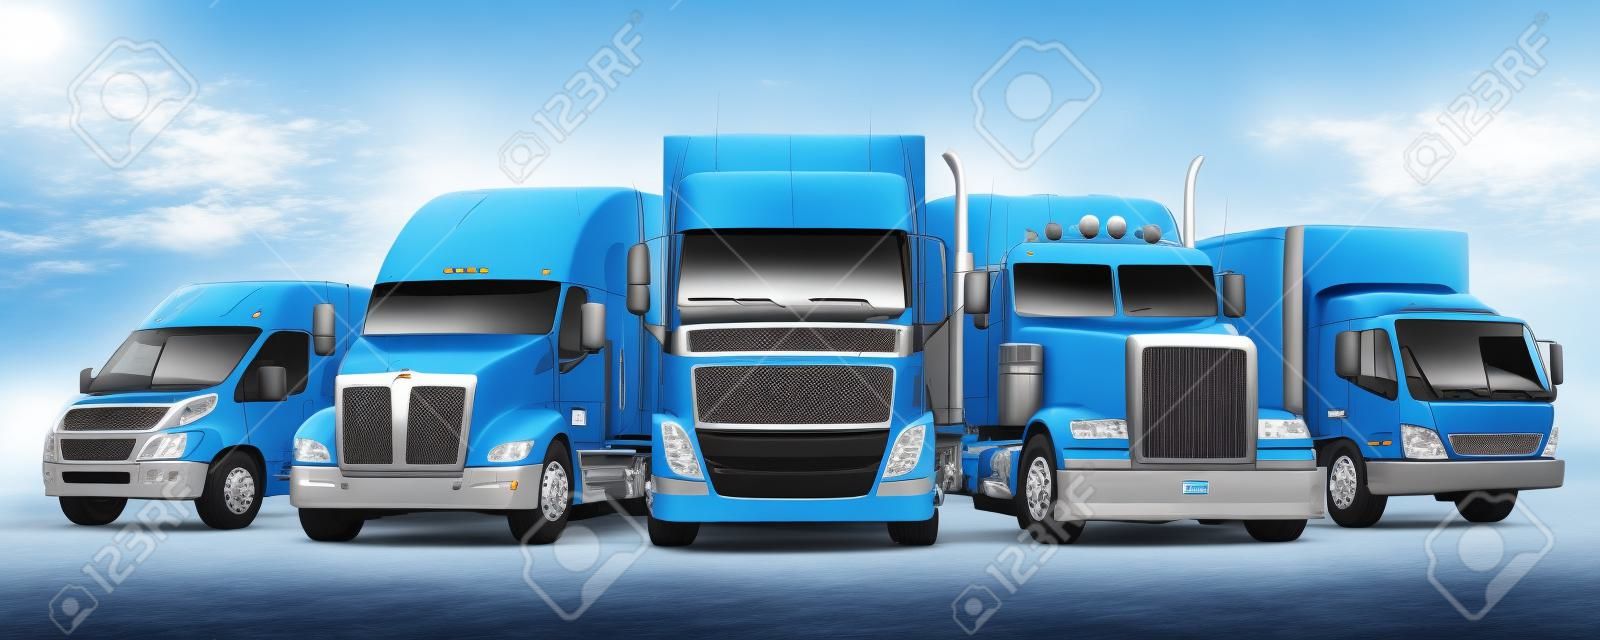 Fleet of Freight Transportation